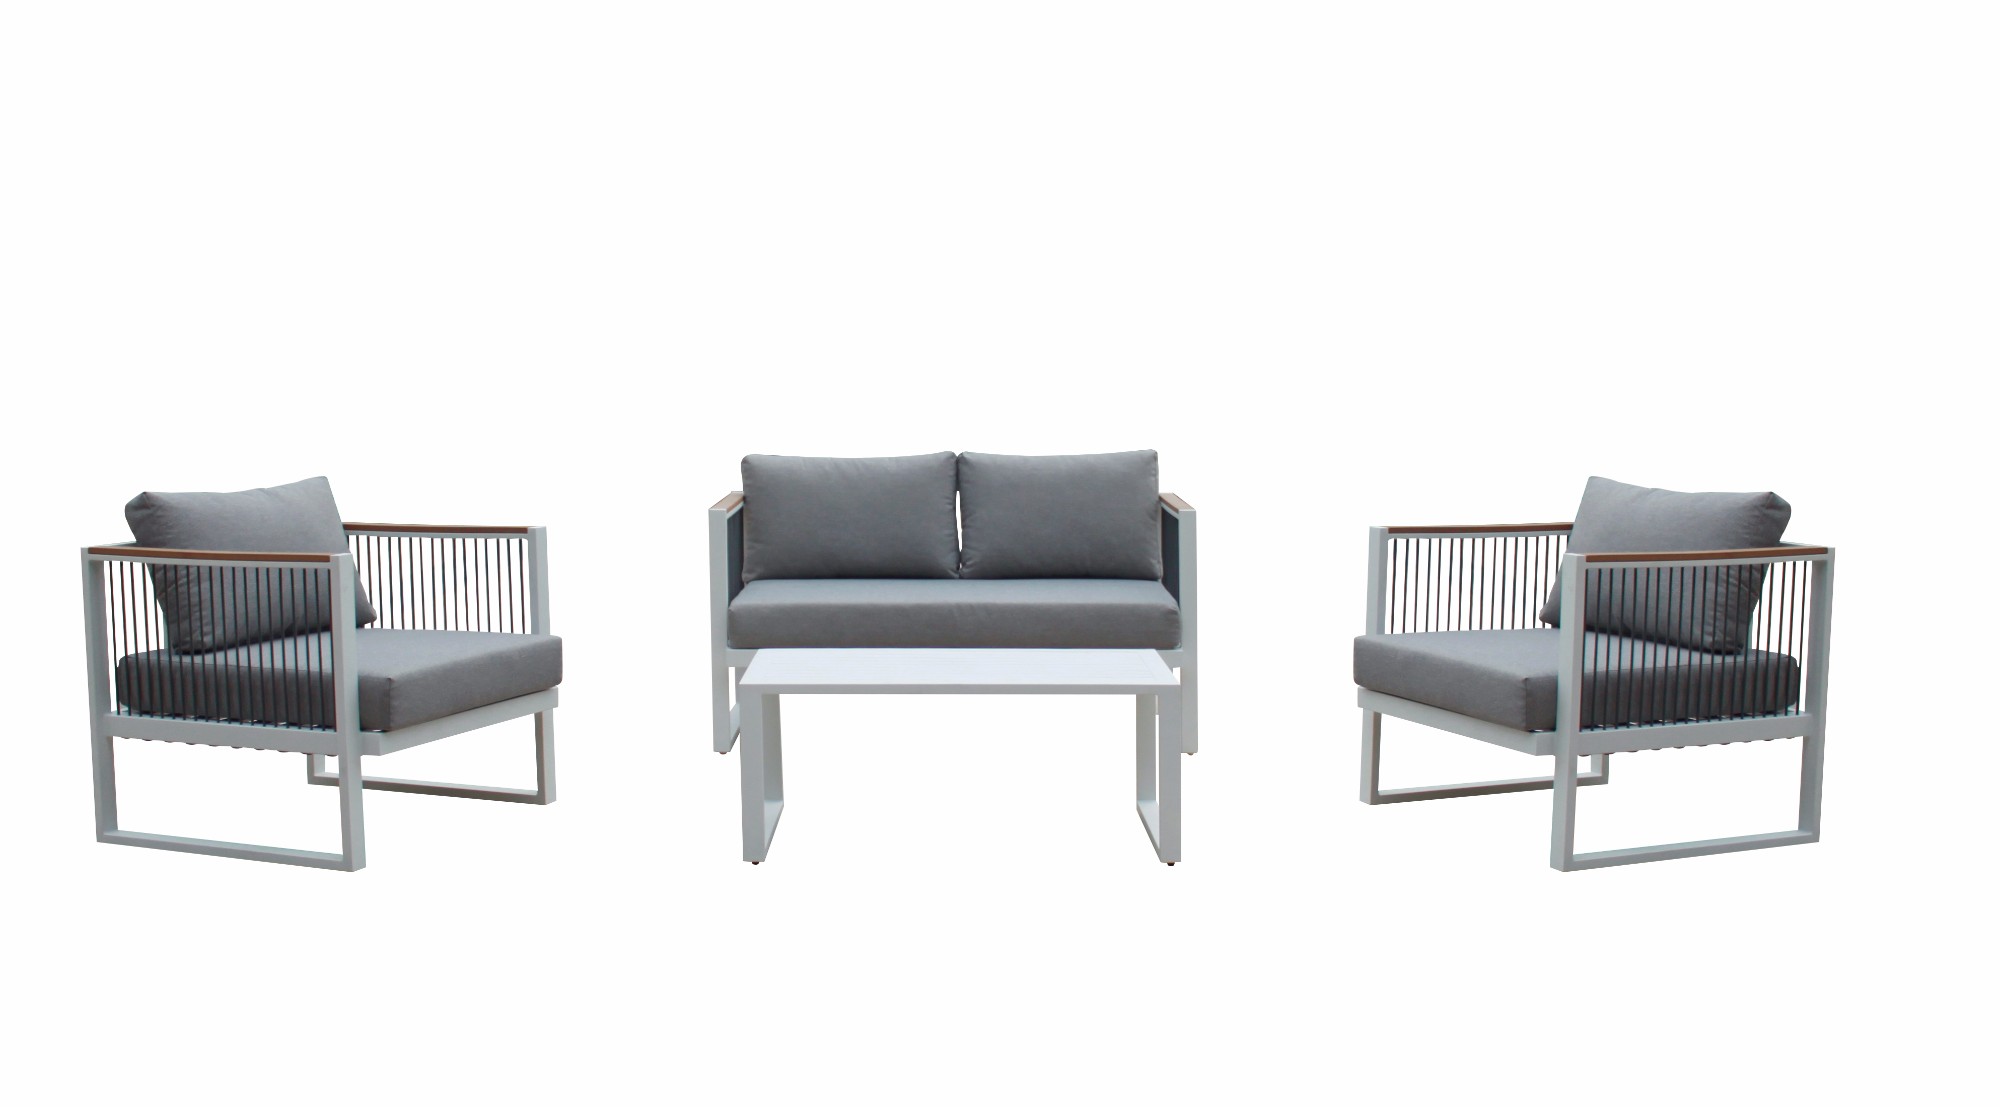 Set modern de canapea cu frânghie pentru mobilier de exterior